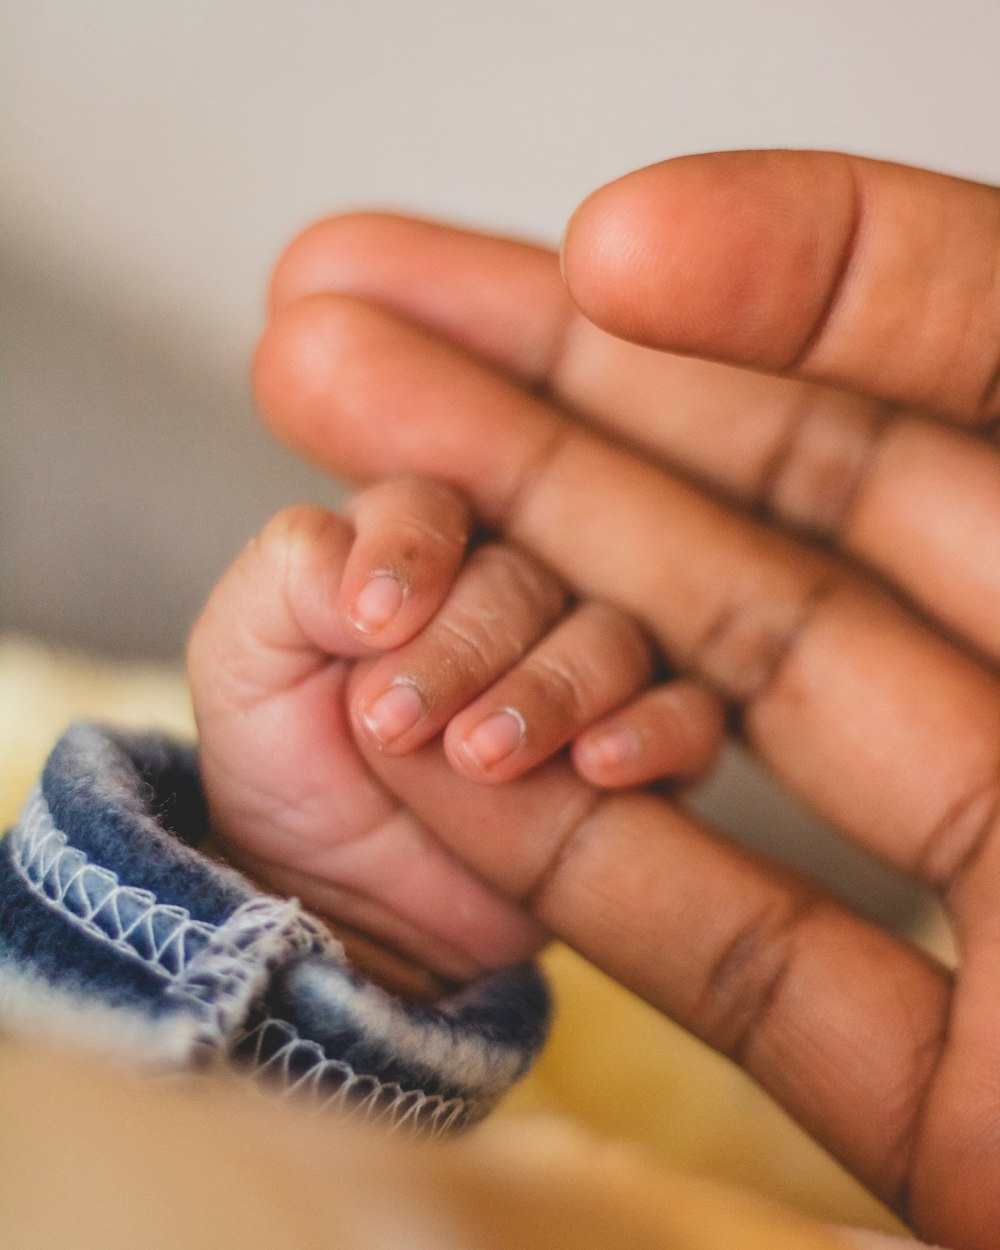 La mano del niño agarrando el dedo meñique de la persona